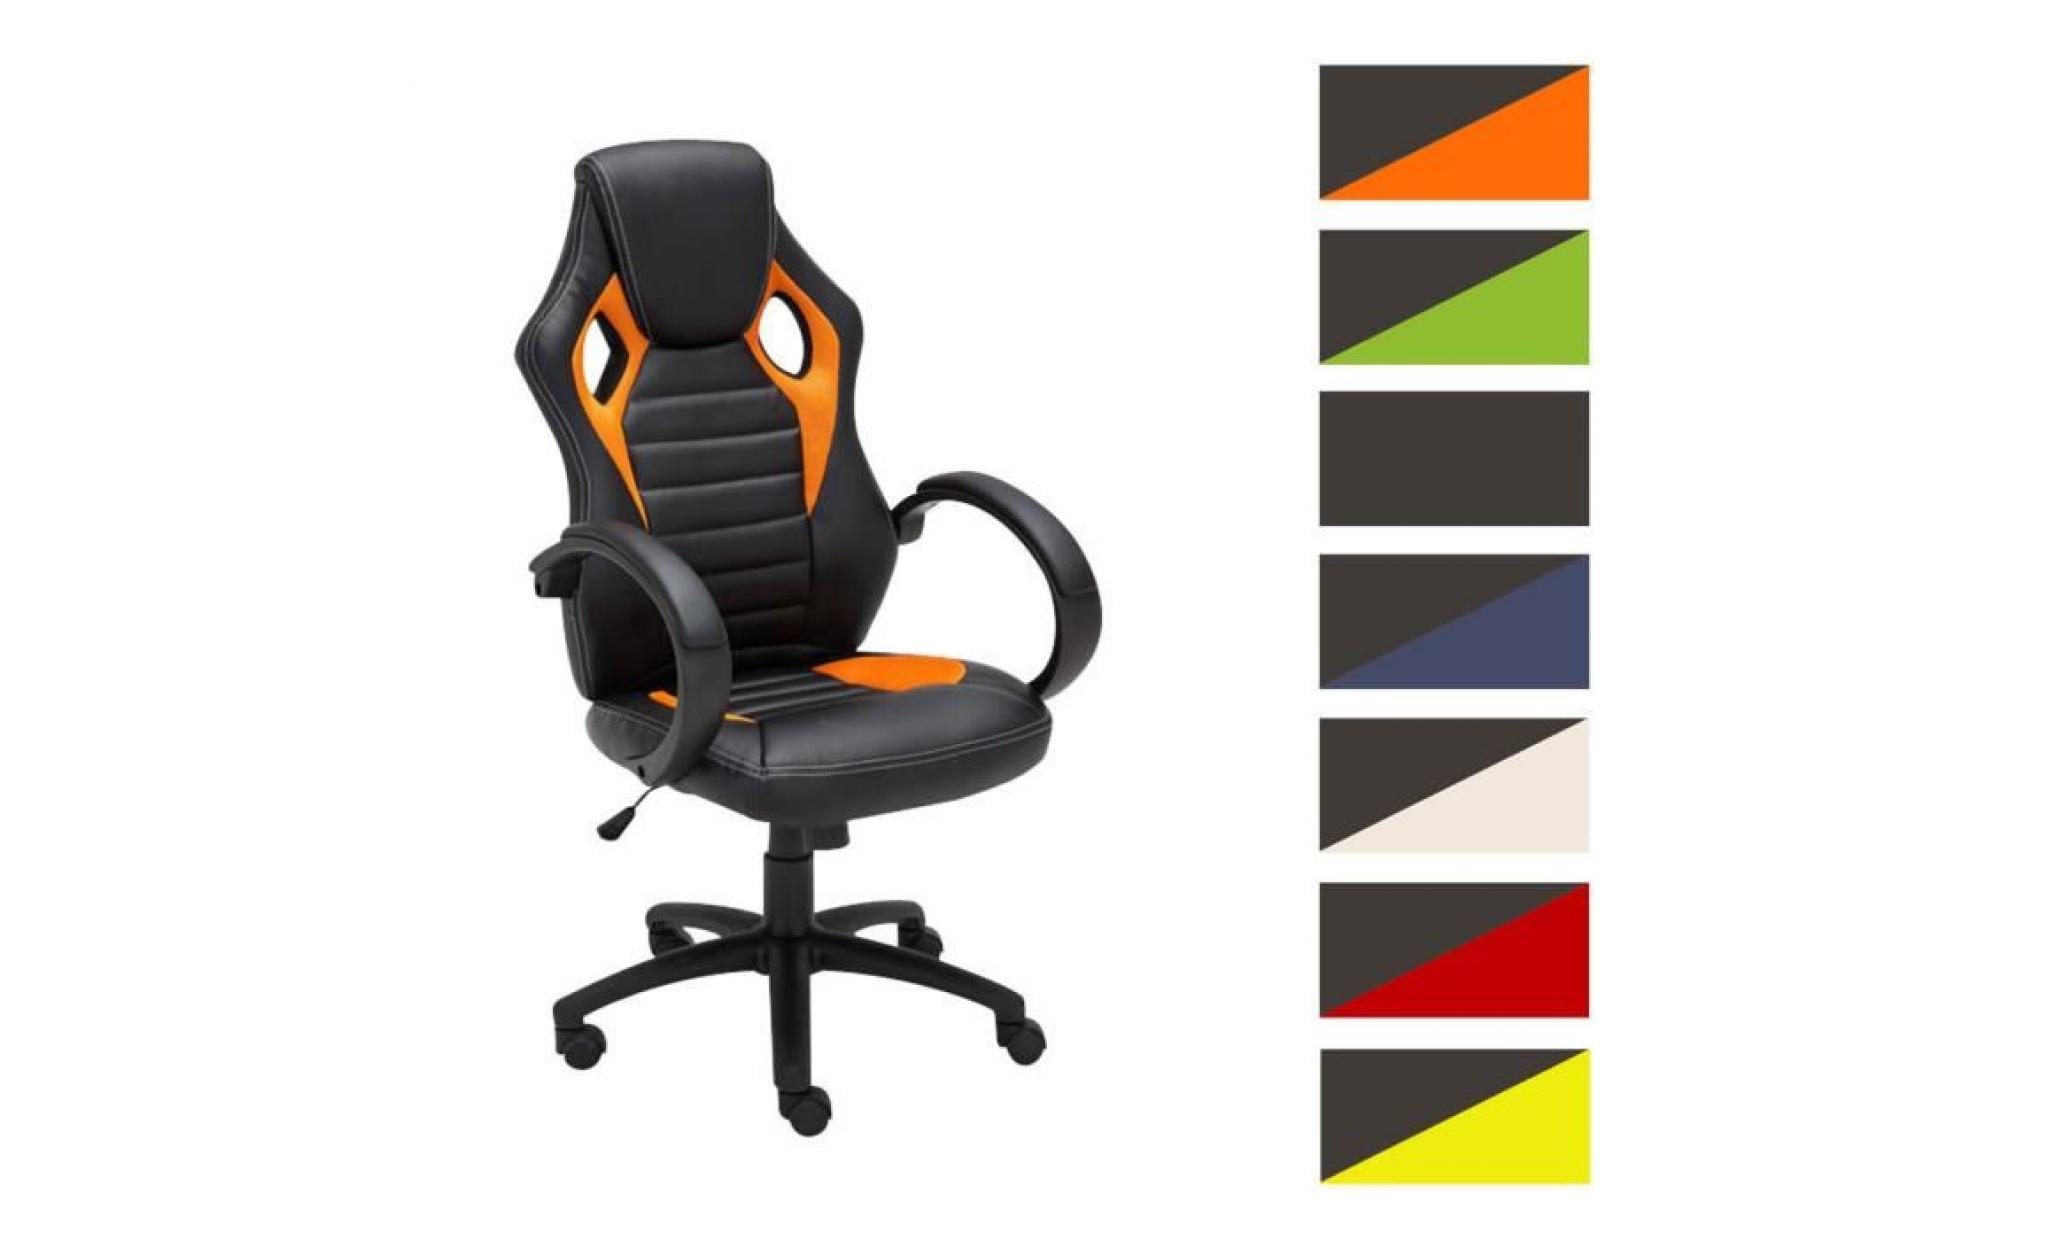 clp fauteuil de bureau speed, chaise bureau avec siège baquet ajustable en hauteur de luxe, revêtement en pu, 7 couleurs au choix...